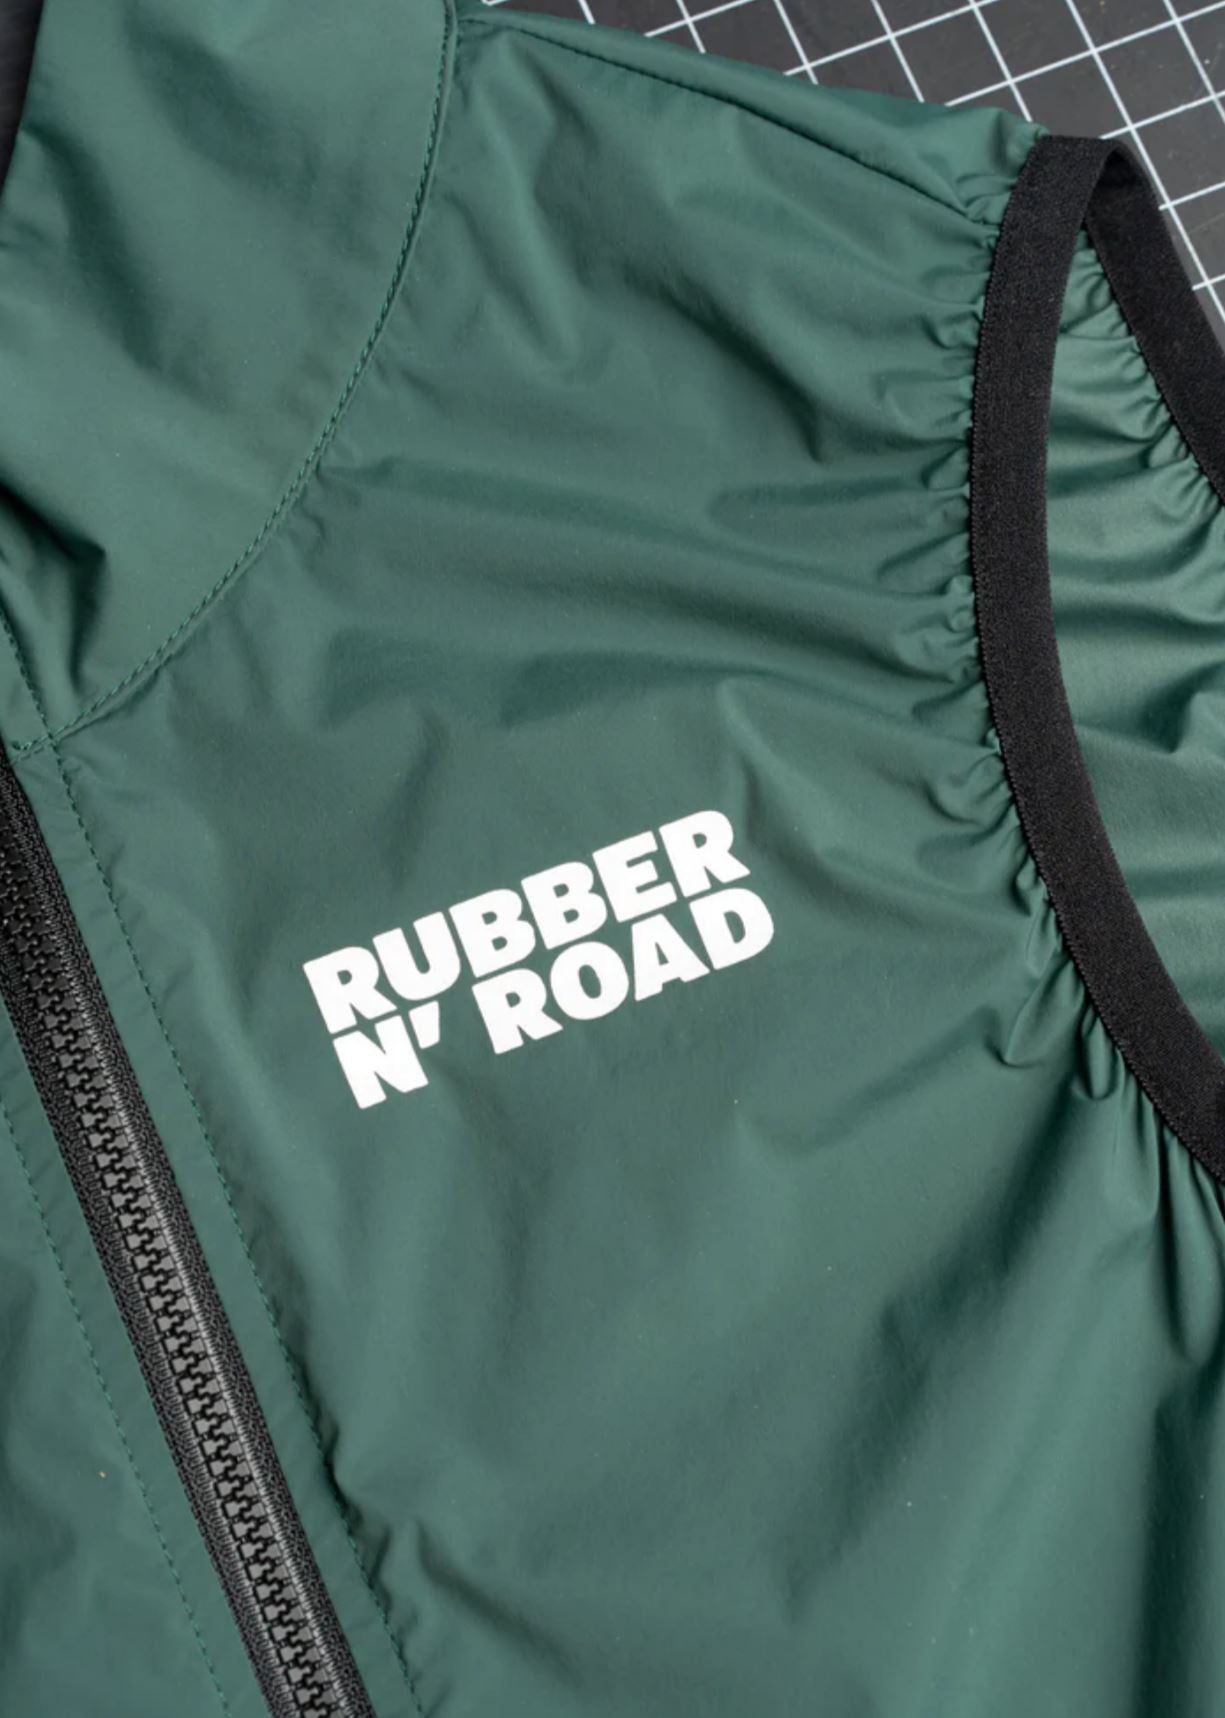 Rubber N' Road - Veste Uniform Vestes Rubber N' Road 